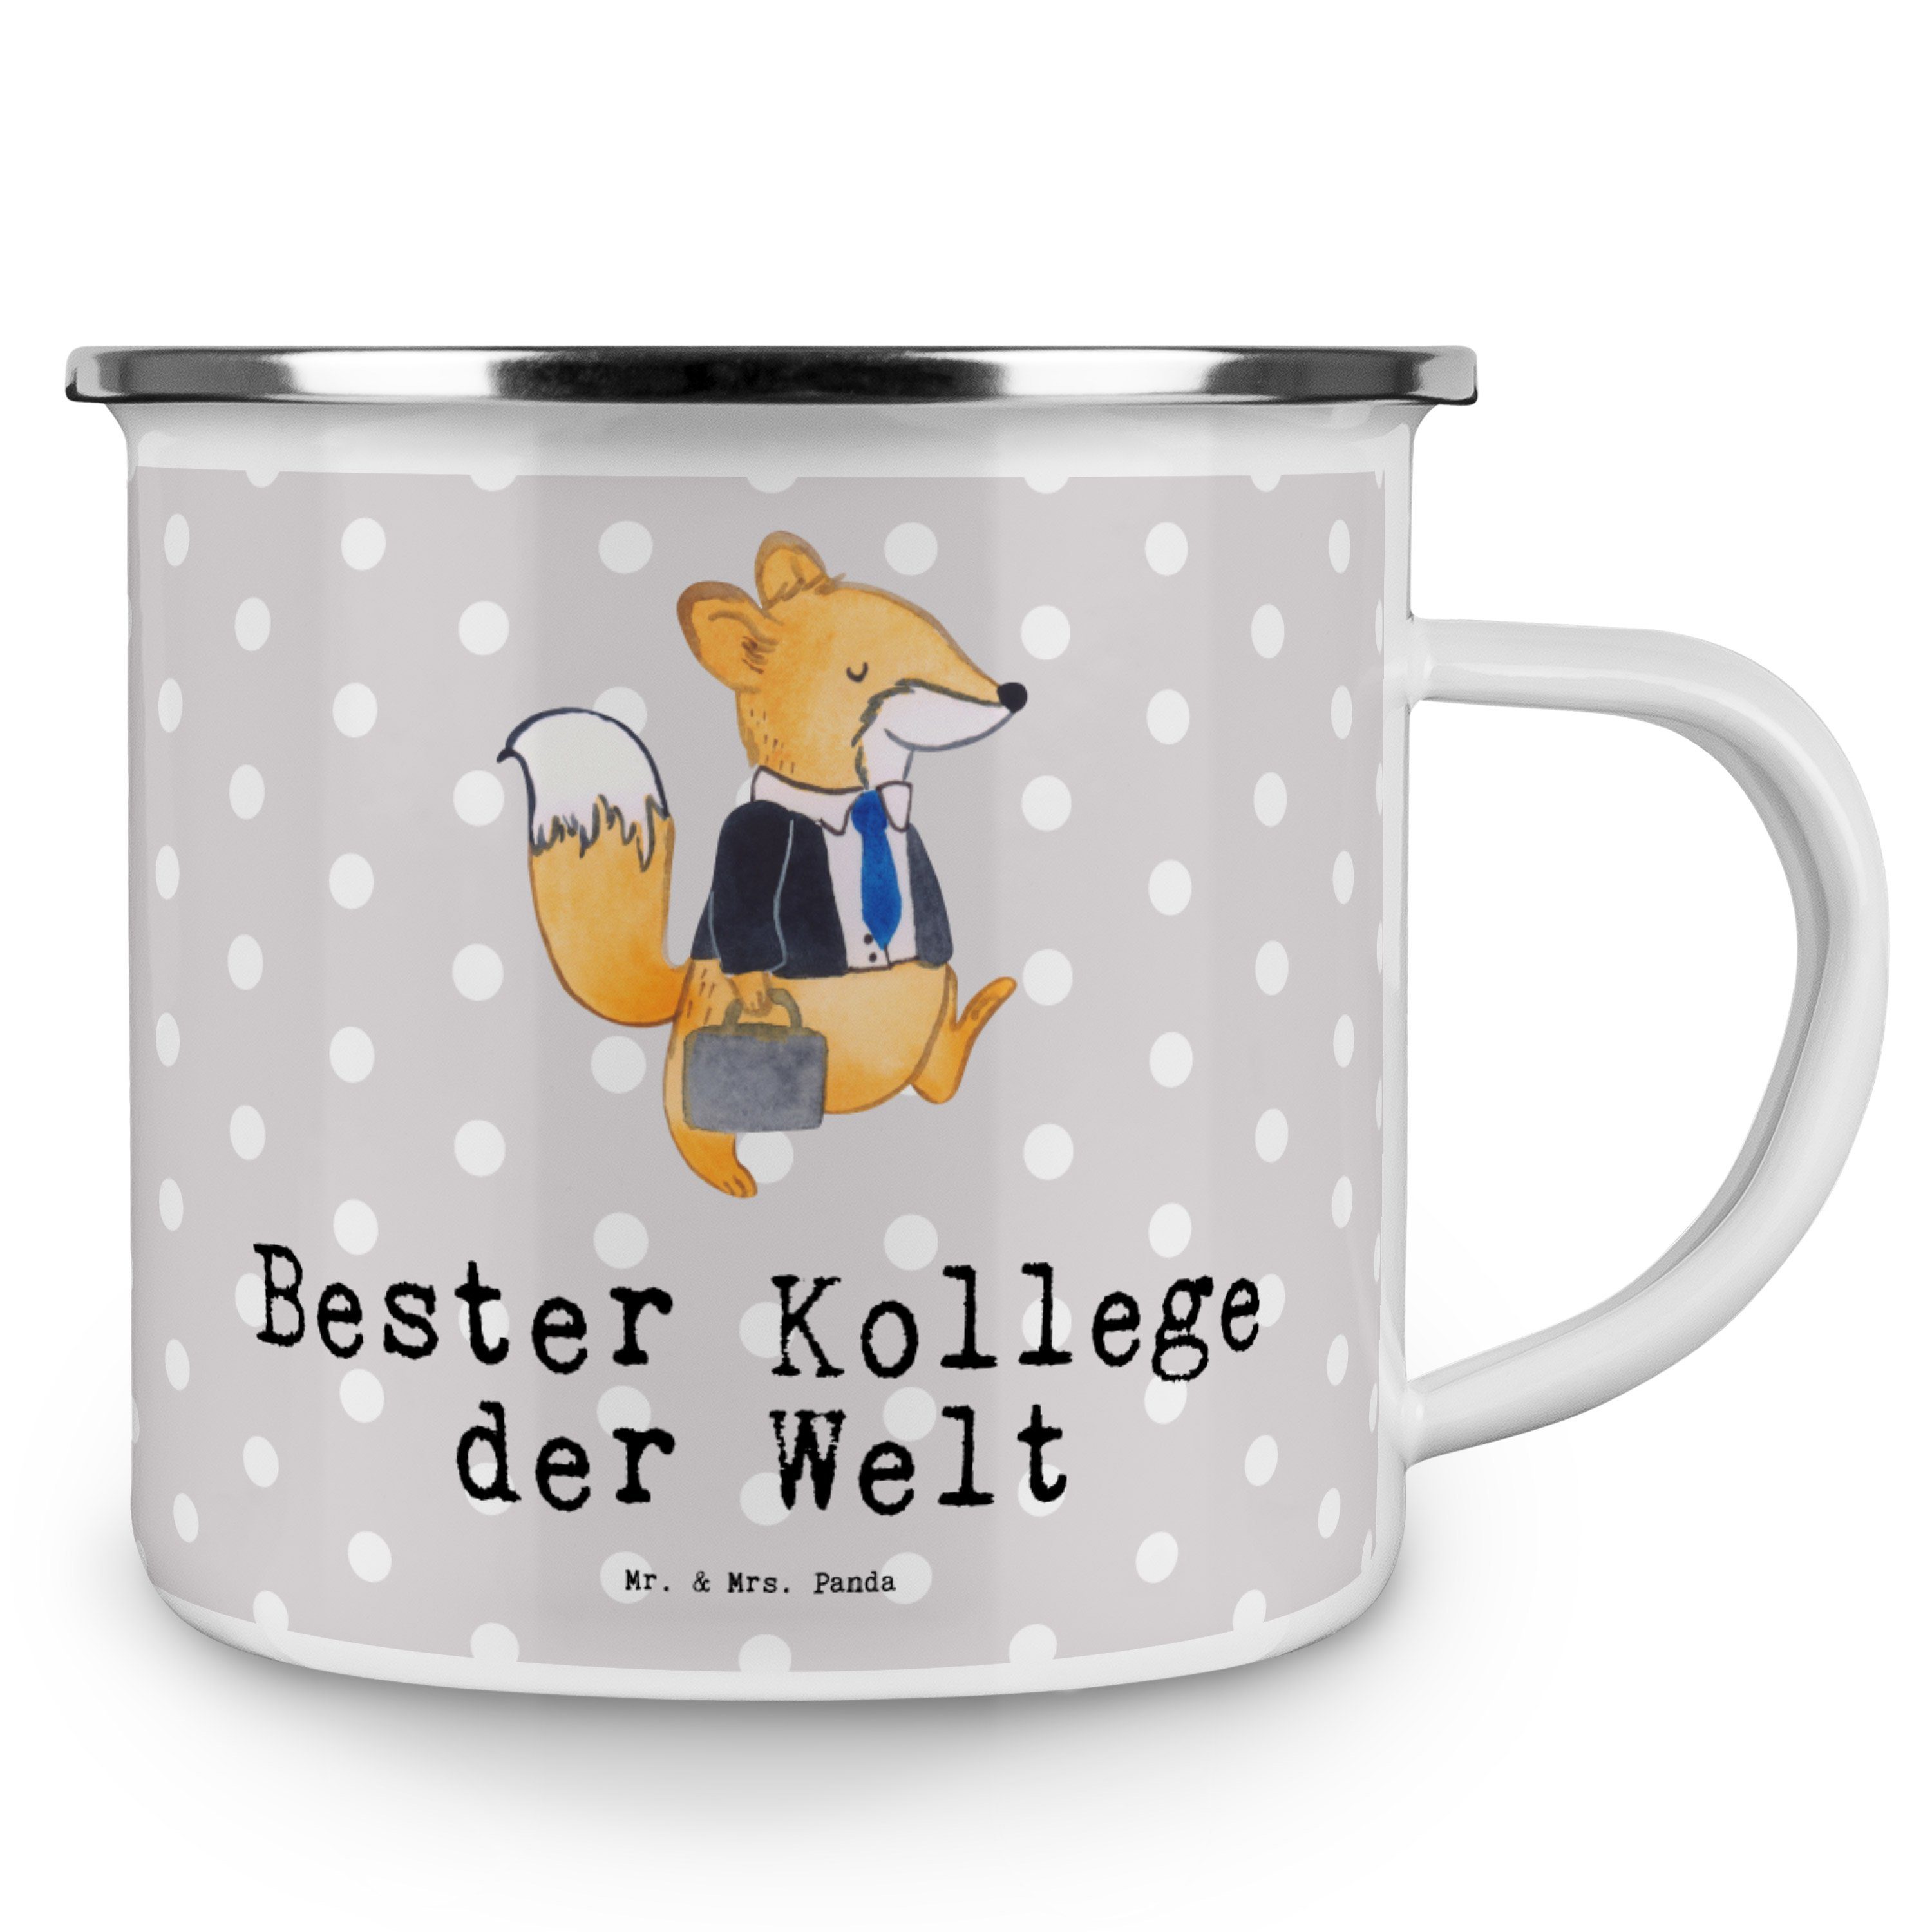 Mr. & Bester Panda - Welt Mrs. Mitarbeiter, der Fuchs Geschenk, Emaille Kollege Becher - Grau Pastell